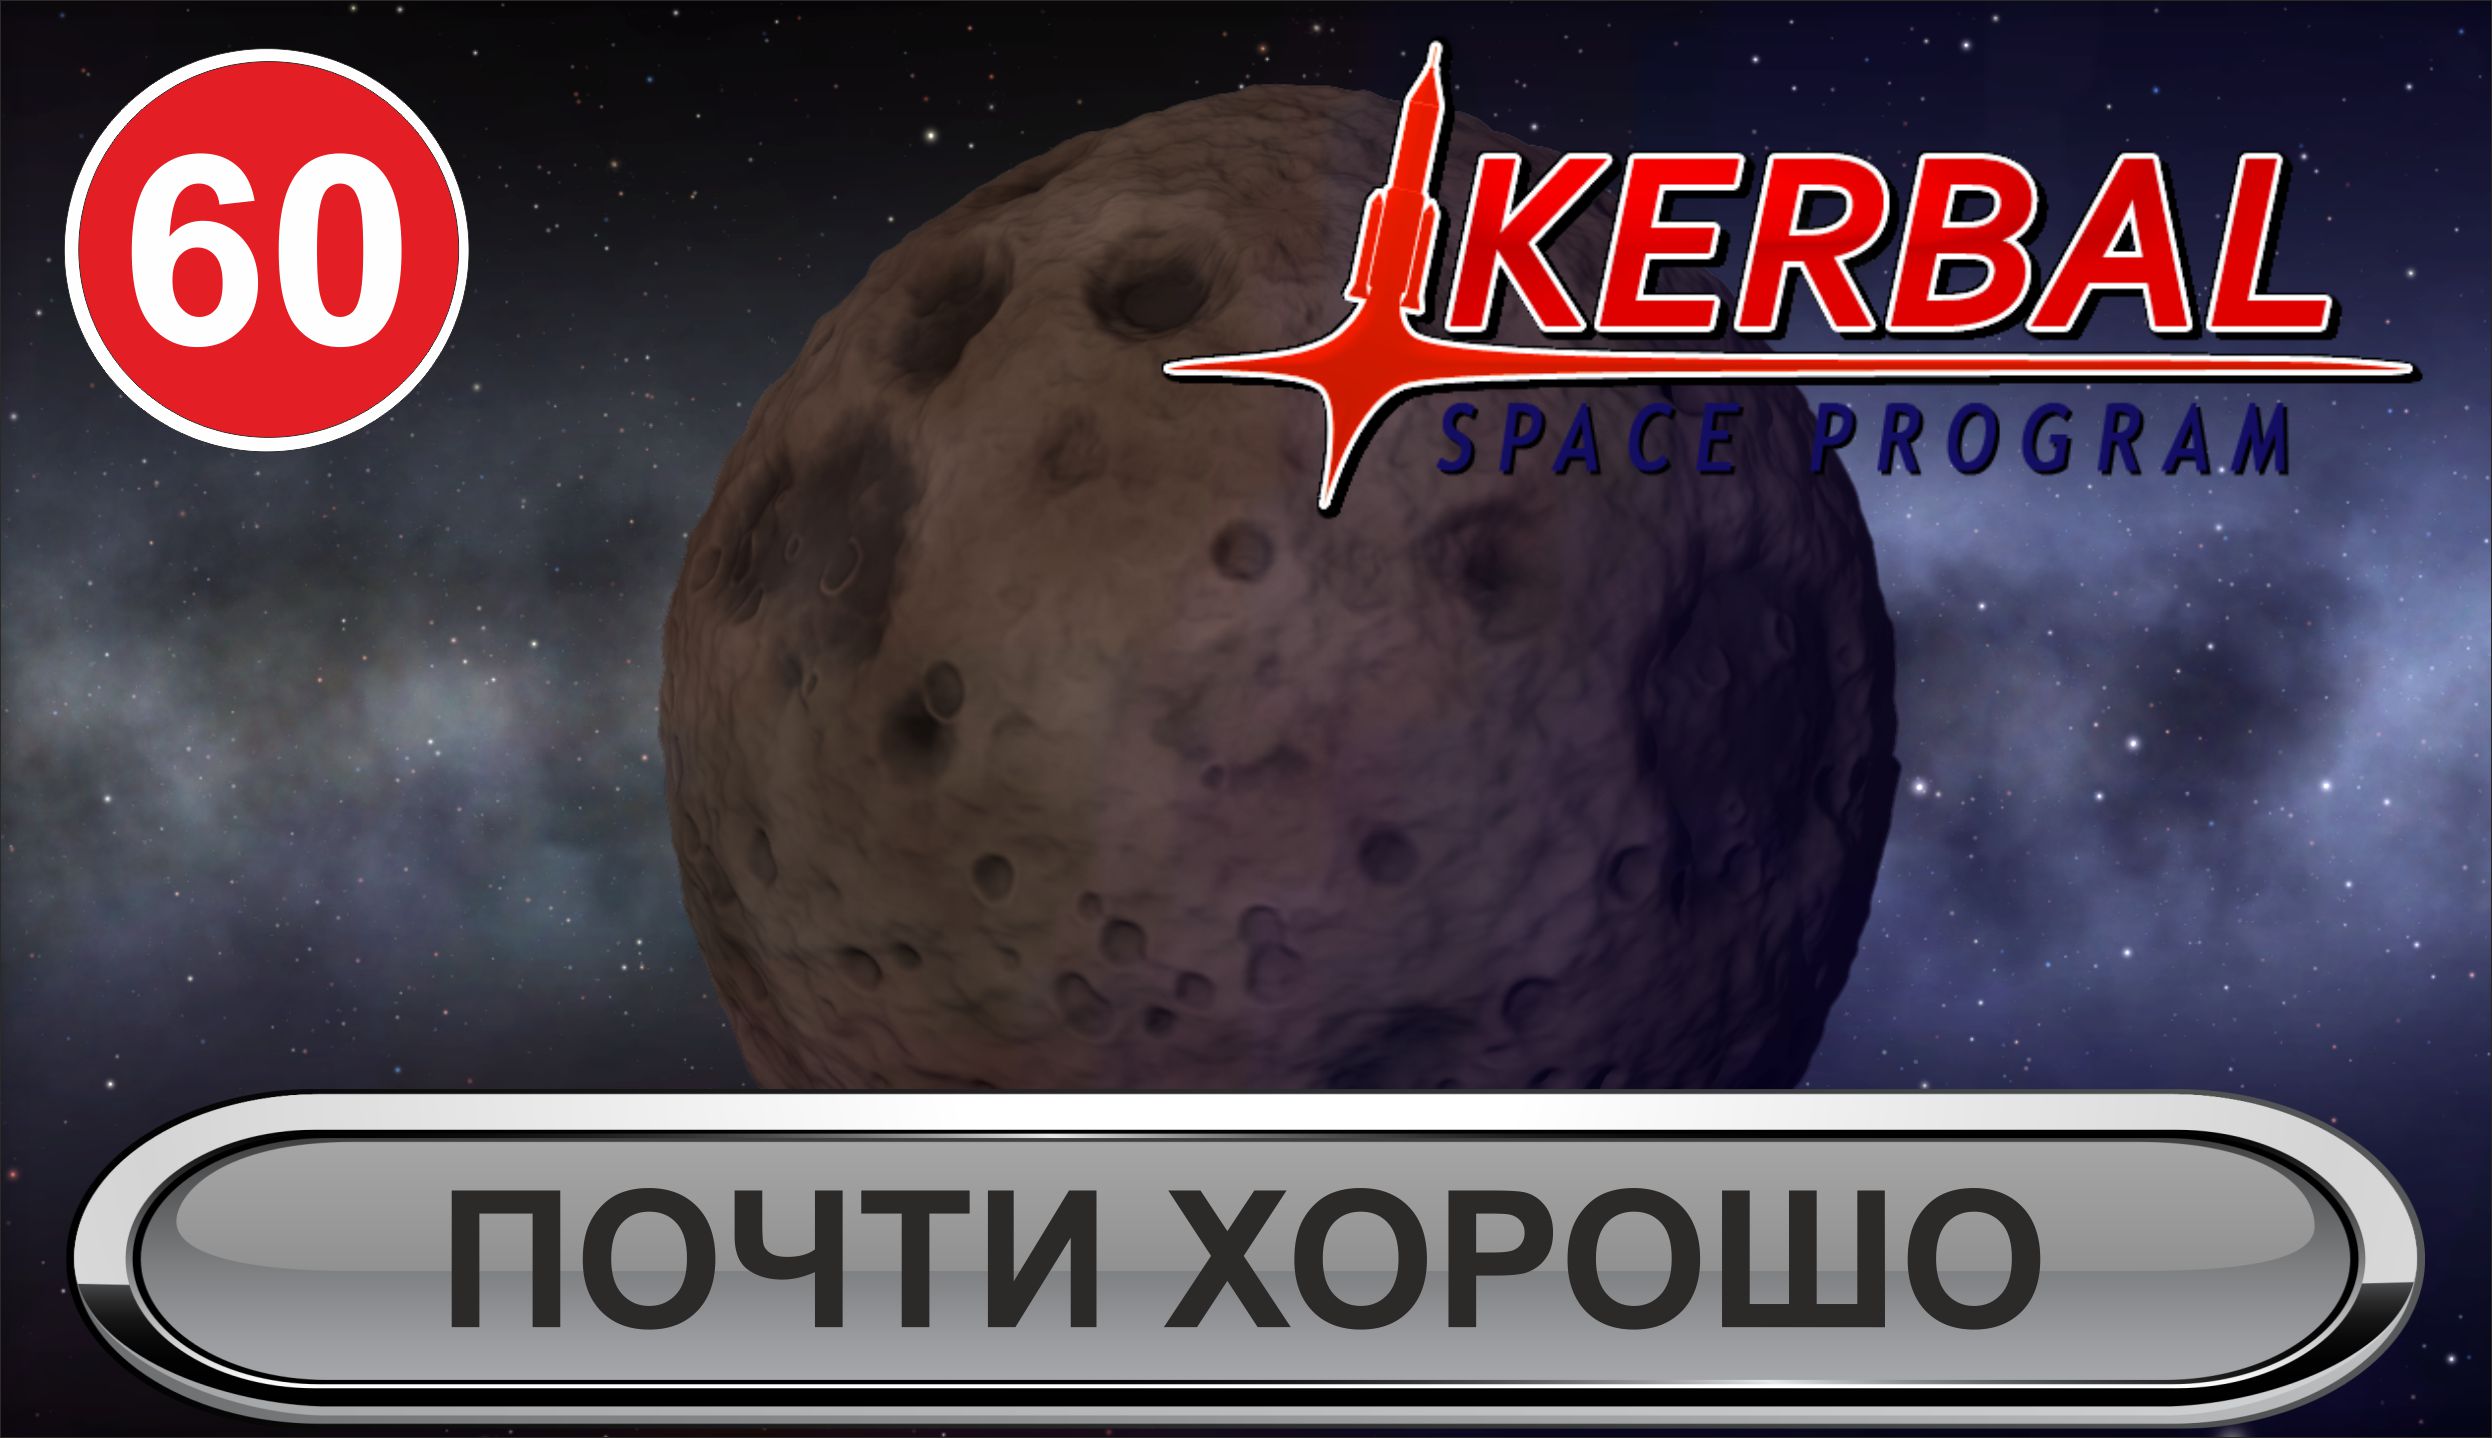 Kerbal Space Program - Почти хорошо